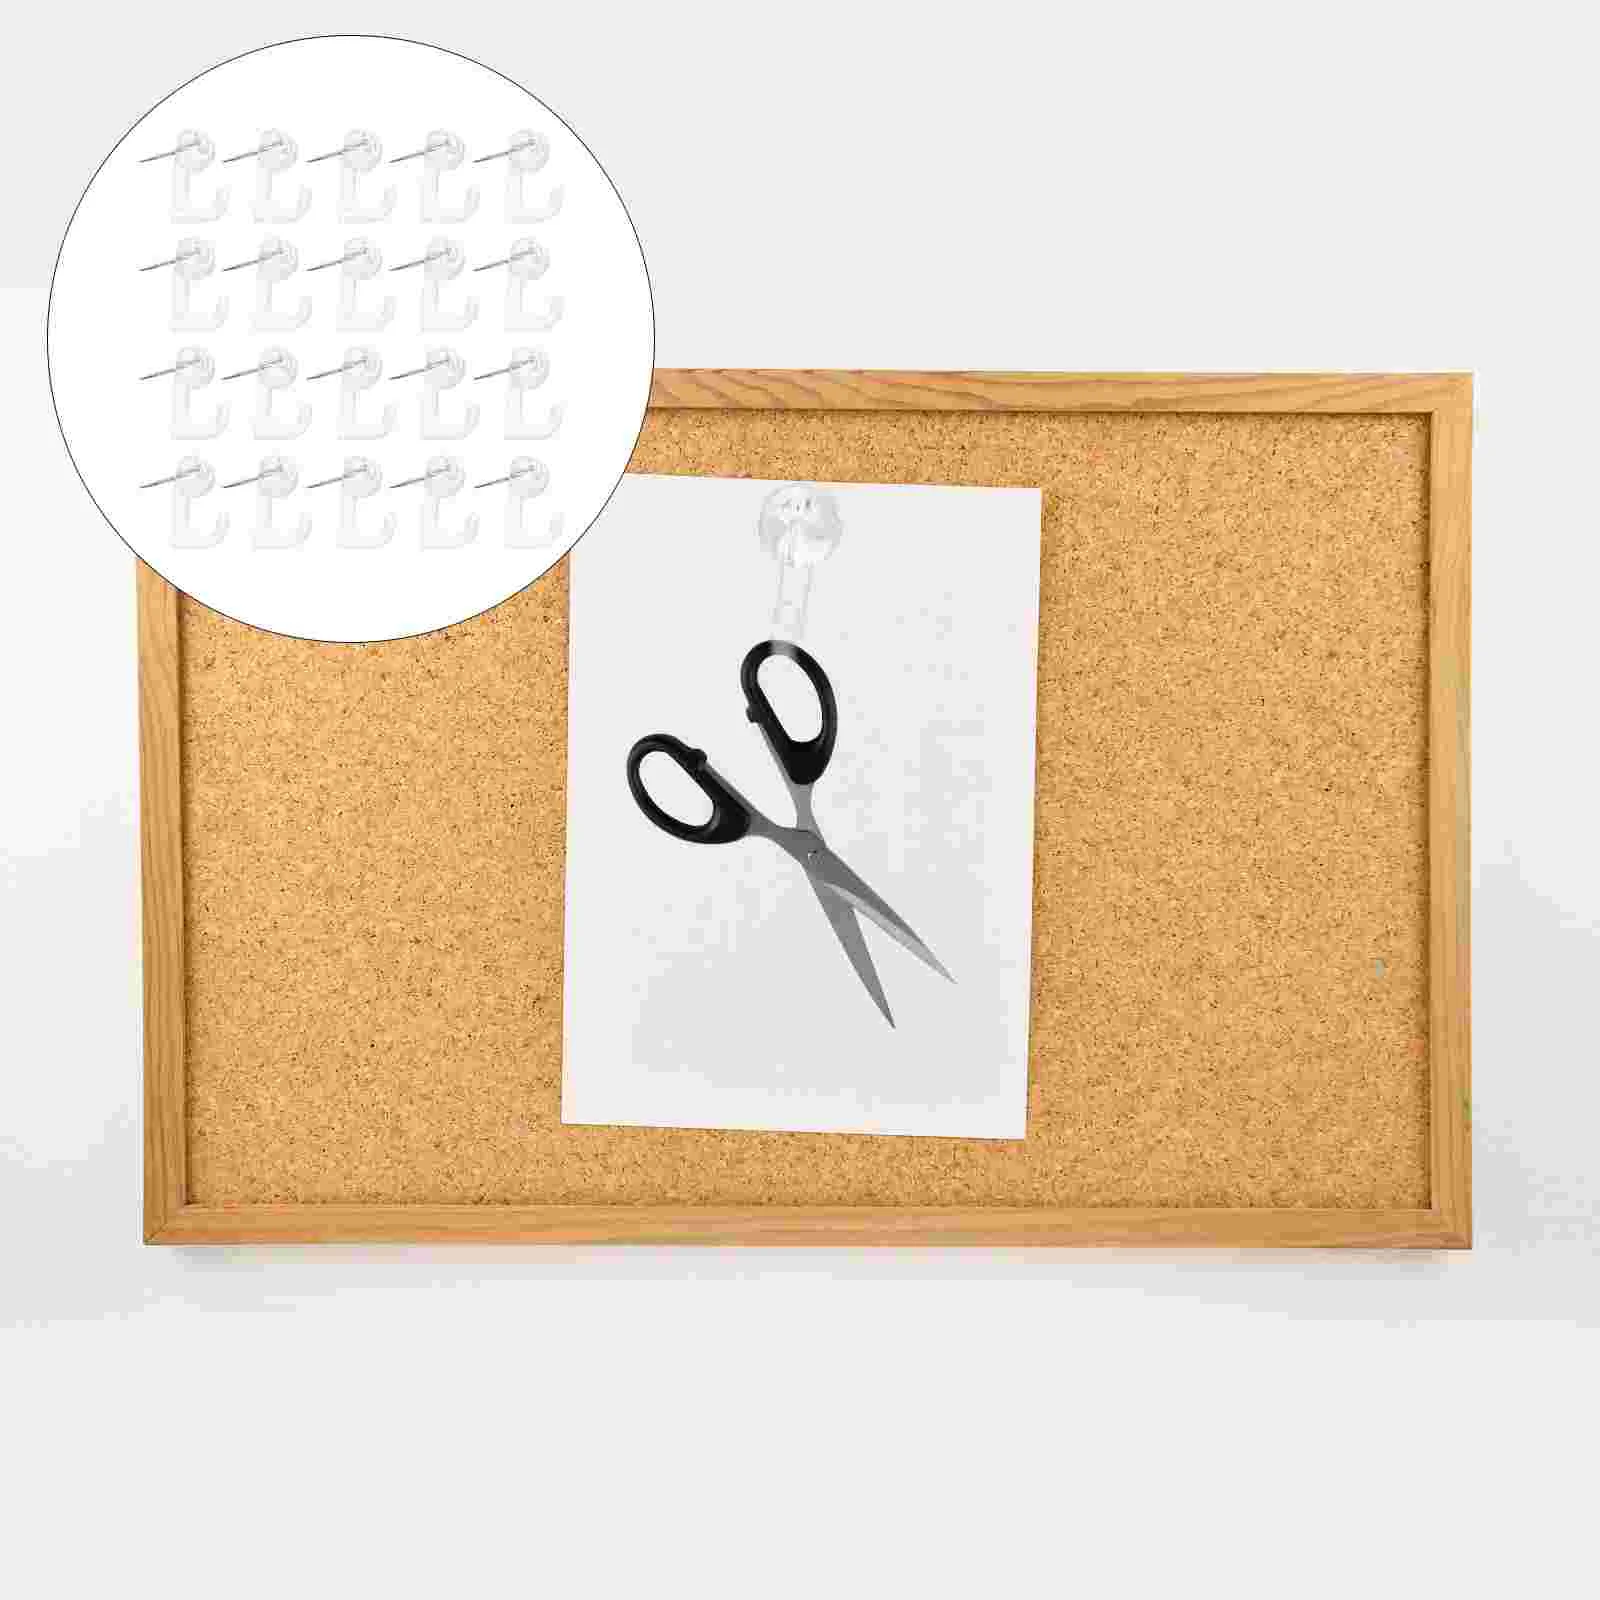 

Крючок-штифт для карт, маркировочные гвозди, вешалки для больших пальцев, крепежные штифты для рисования и фото